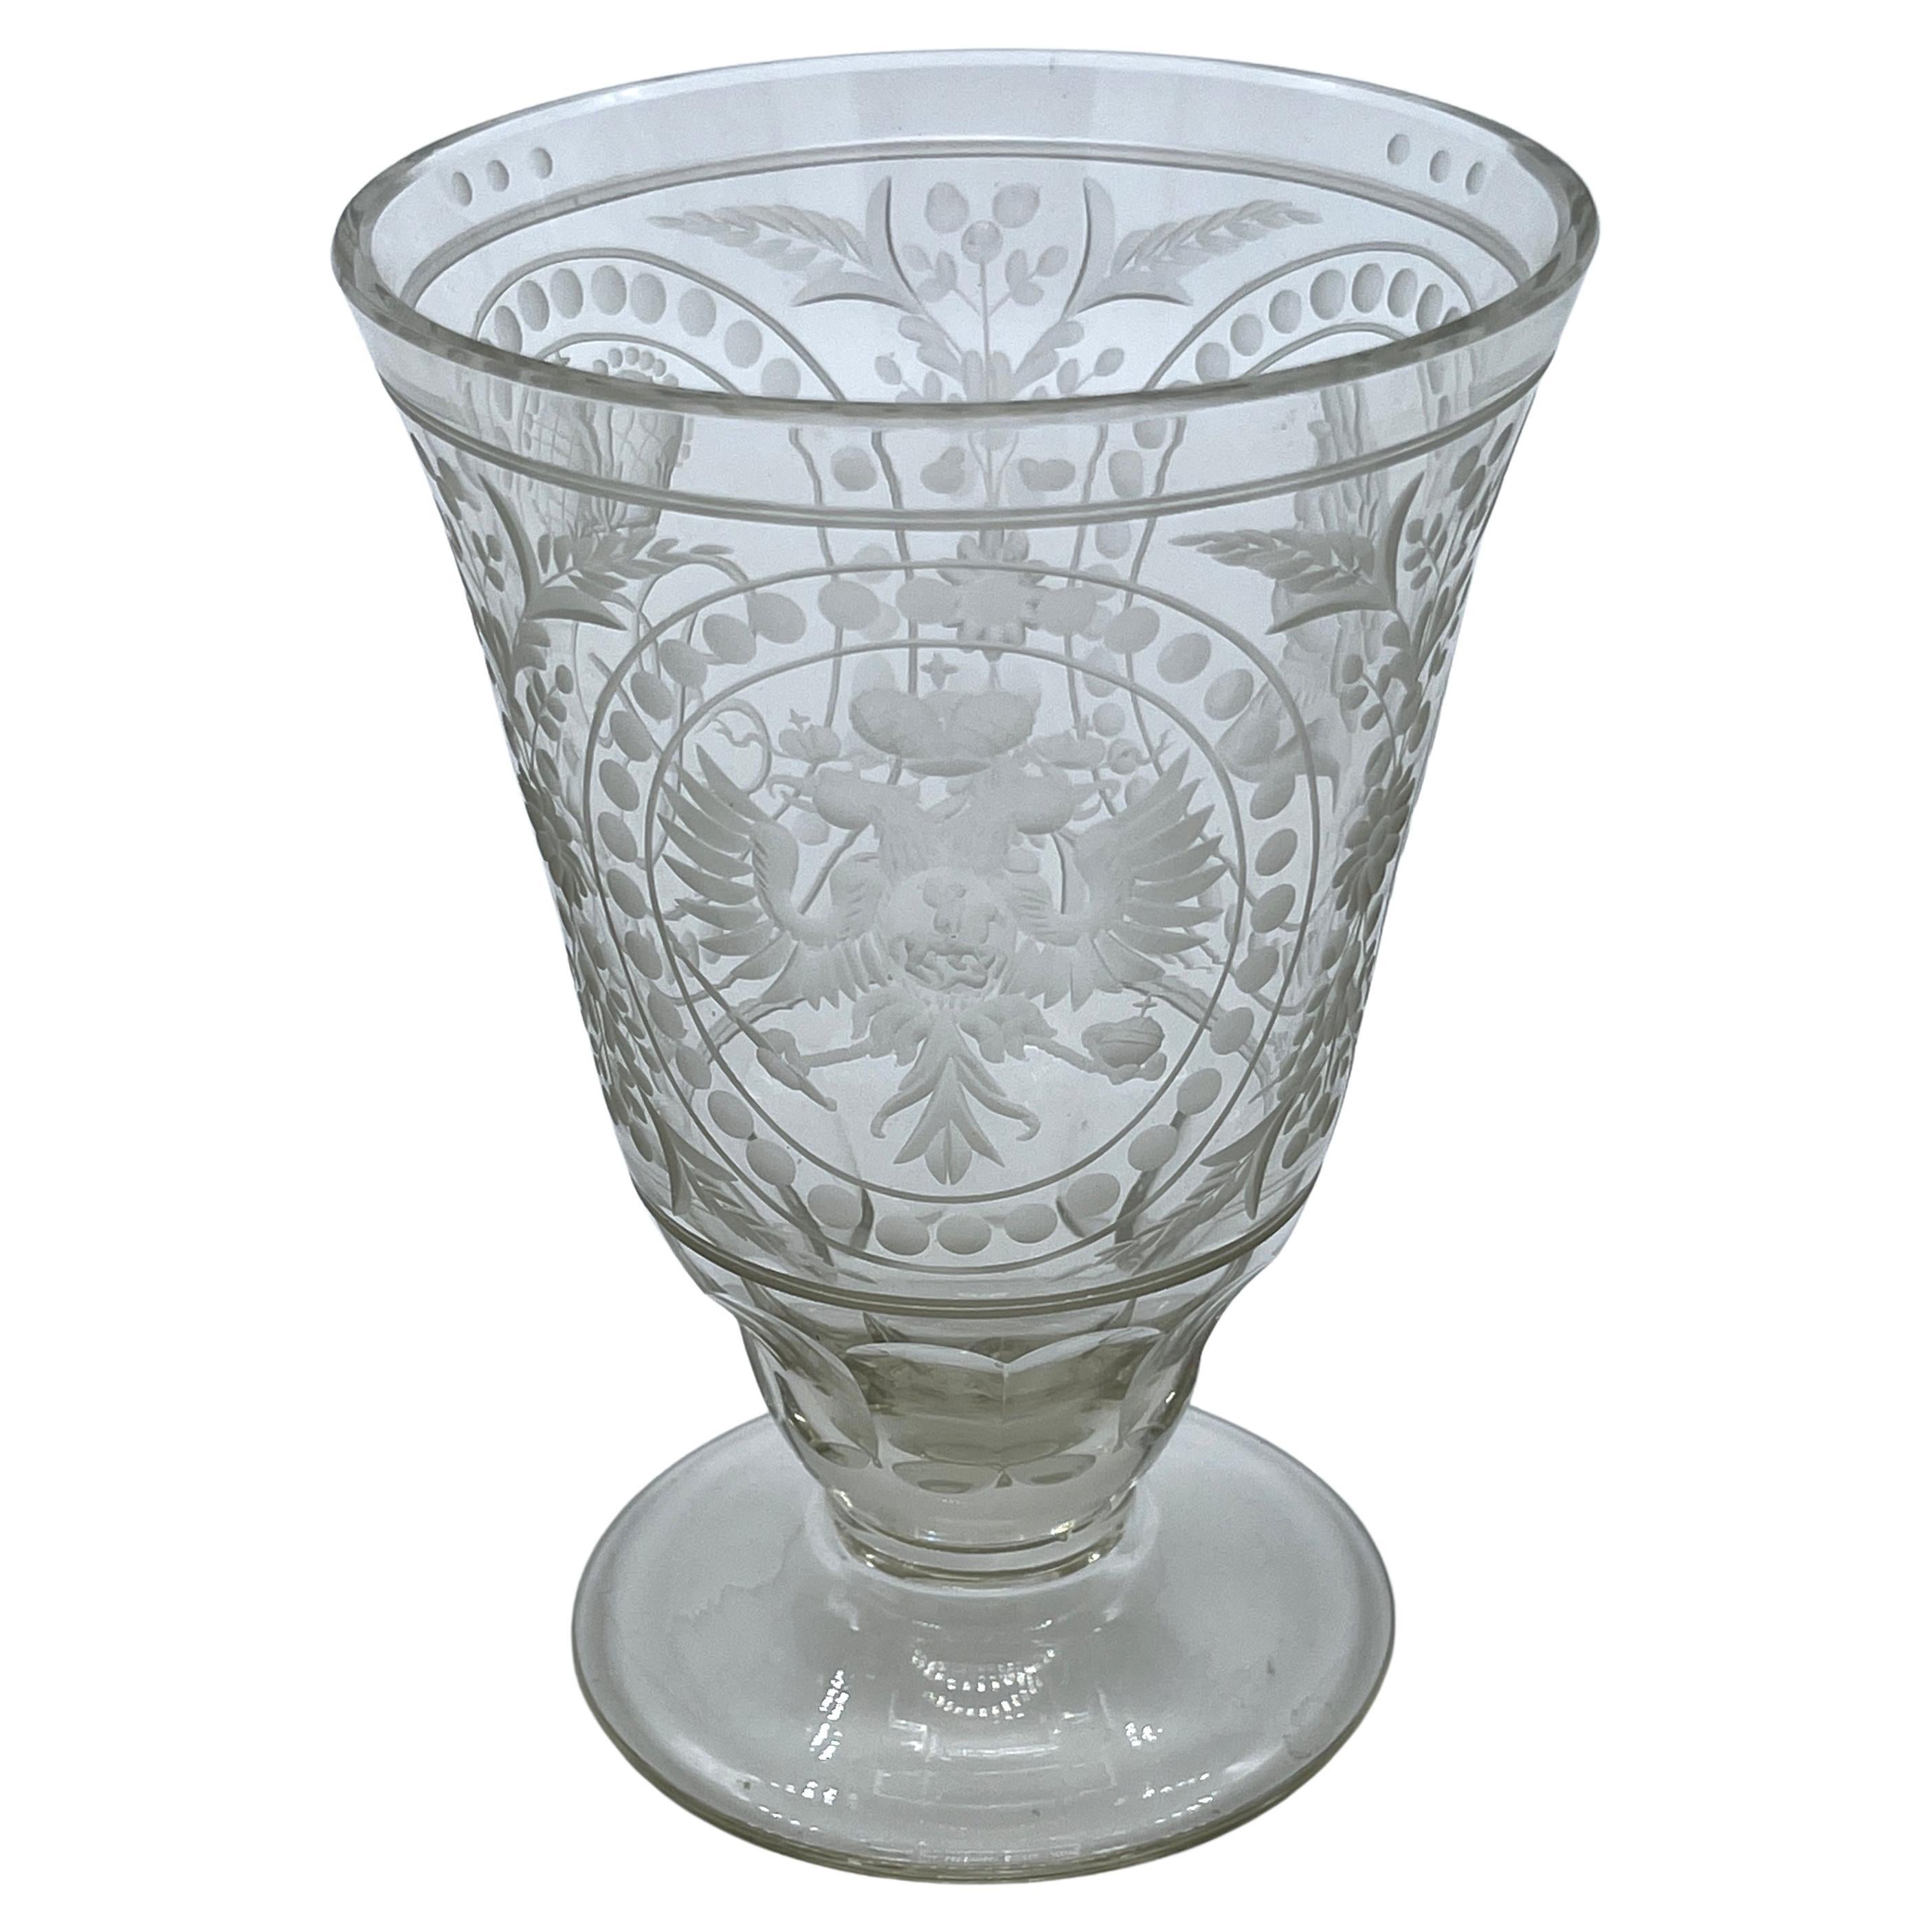 Vaso de cristal ruso grabado, conmemorativo de Alejandro I, "El Bienaventurado"